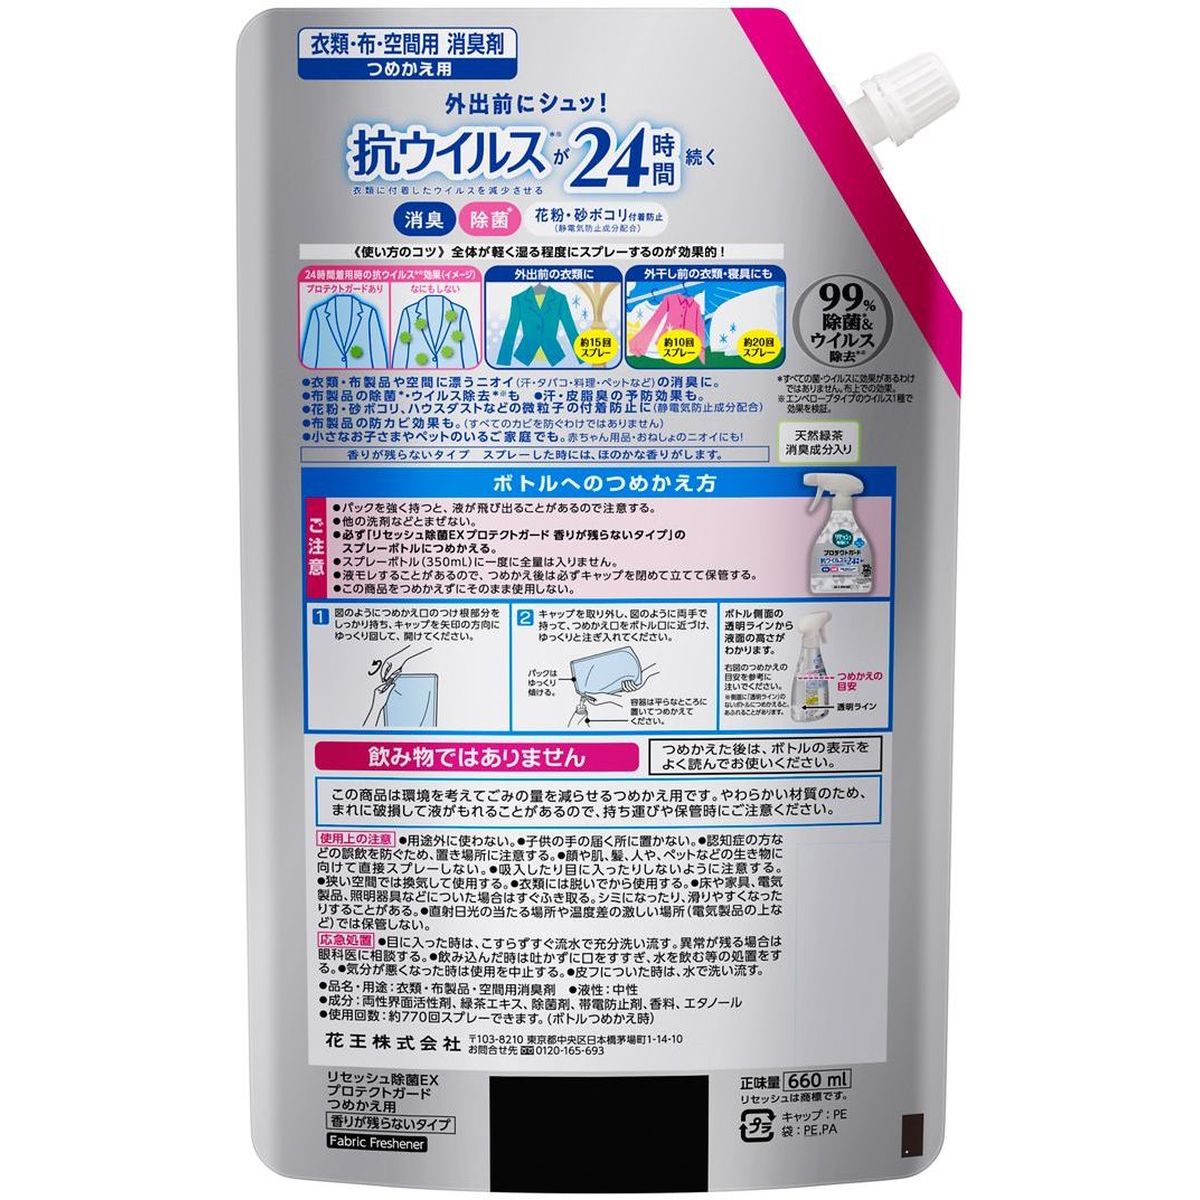 リセッシュ除菌ＥＸ 消臭芳香剤 プロテクトガード つめかえ用 660ml